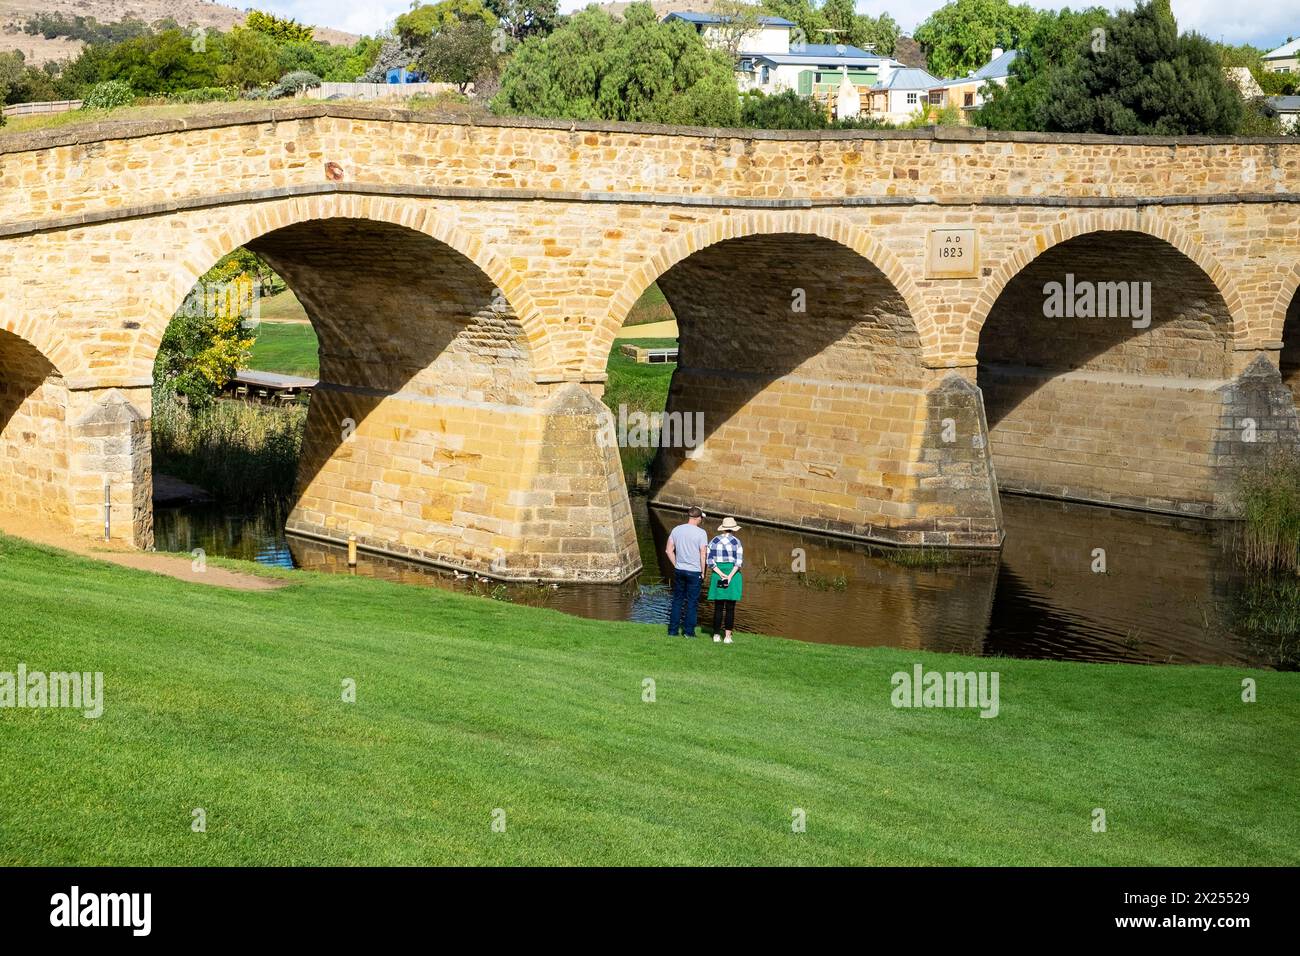 Die Richmond Bridge ist die älteste denkmalgeschützte, von Sträflingen erbaute Brücke an der B31 in Richmond, 25 Kilometer nördlich von Hobart in Tasmanien. Stockfoto